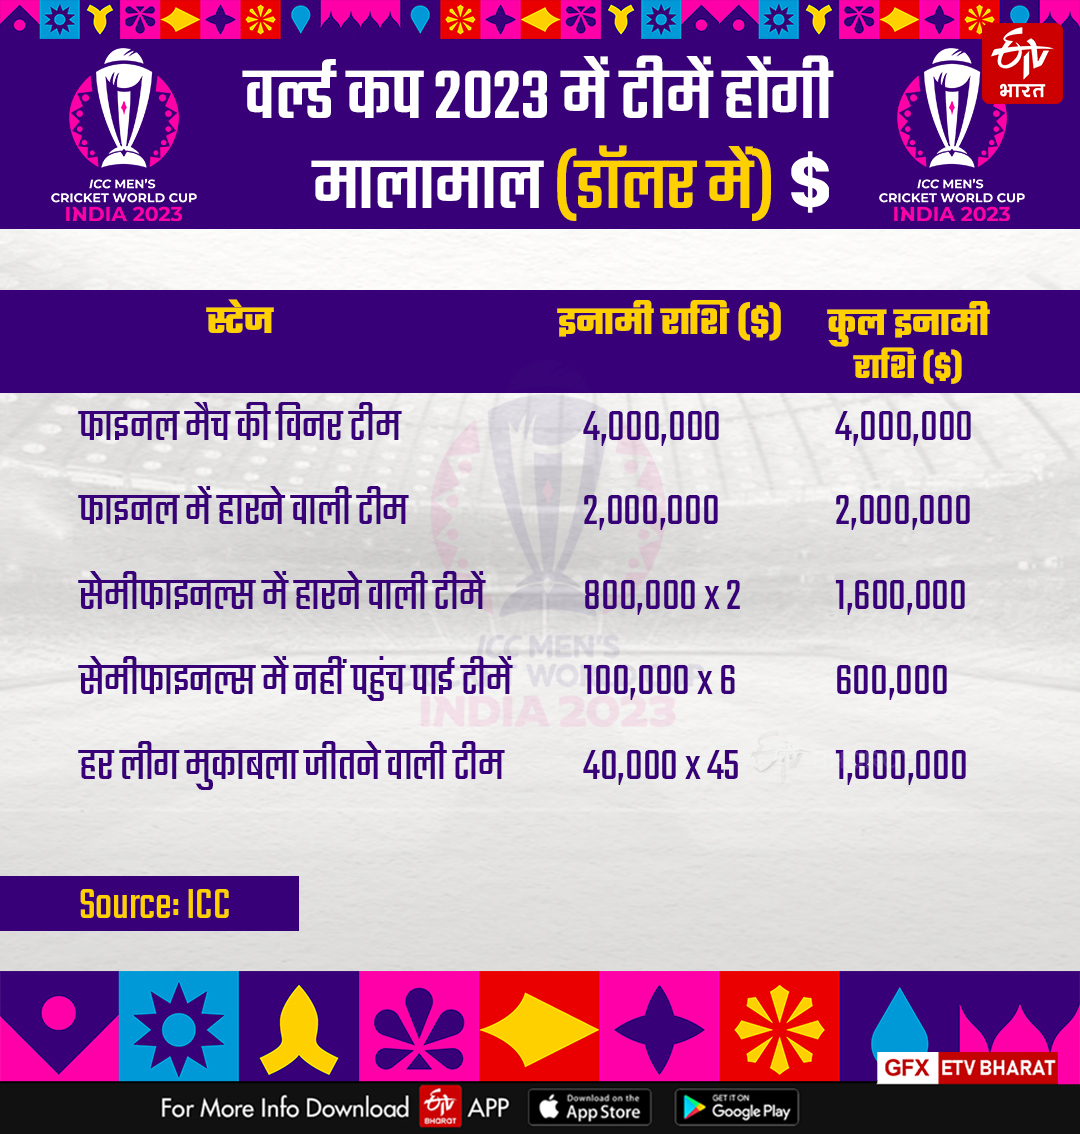 क्रिकेट वर्ल्ड कप 2023 प्राइज मनी (डॉलर में)